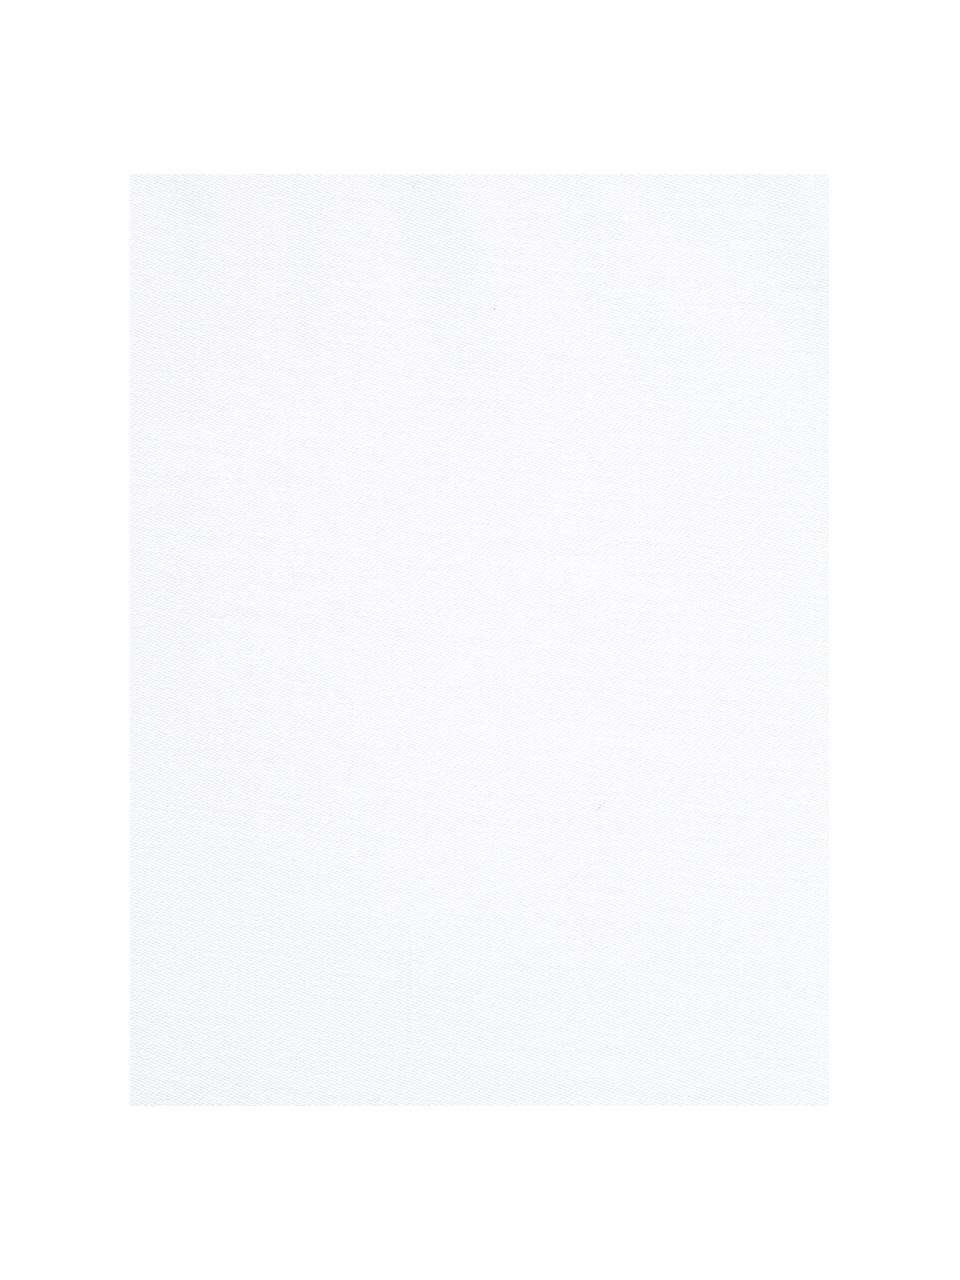 Baumwollsatin-Kopfkissenbezüge Comfort in Weiß, 2 Stück, Webart: Satin Fadendichte 250 TC,, Weiß, 40 x 80 cm